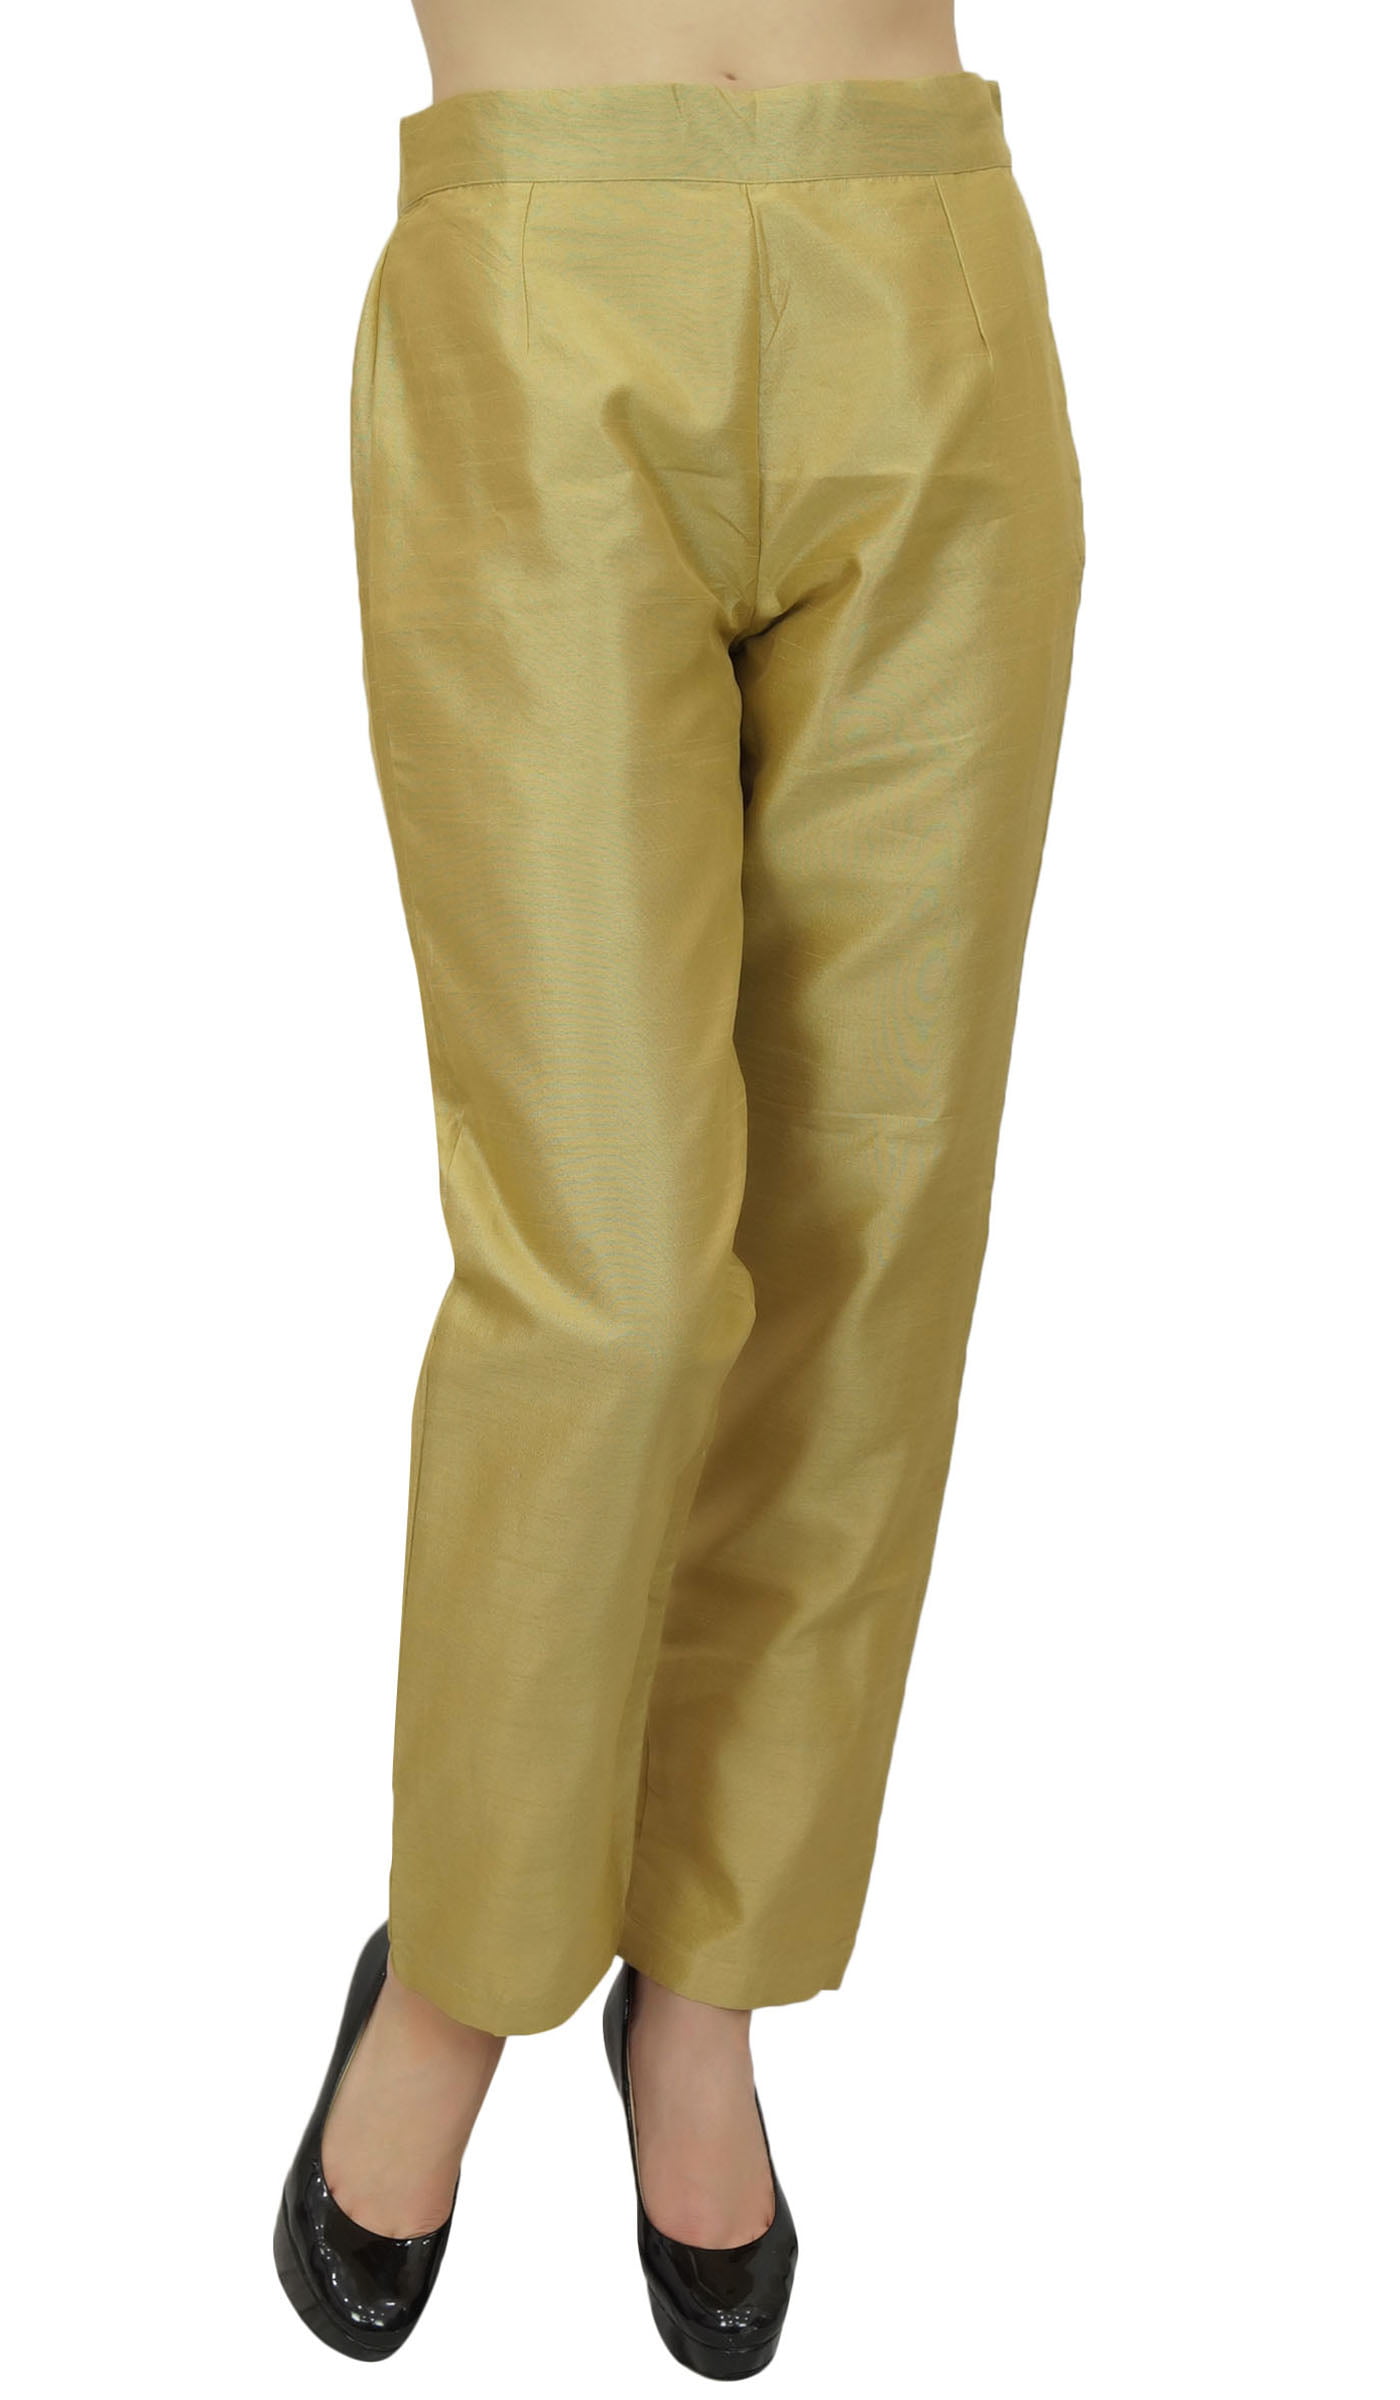 Phagun Women's Dupion Pants High Waist Green Narrow Bottom Trousers-Medium  - Walmart.com